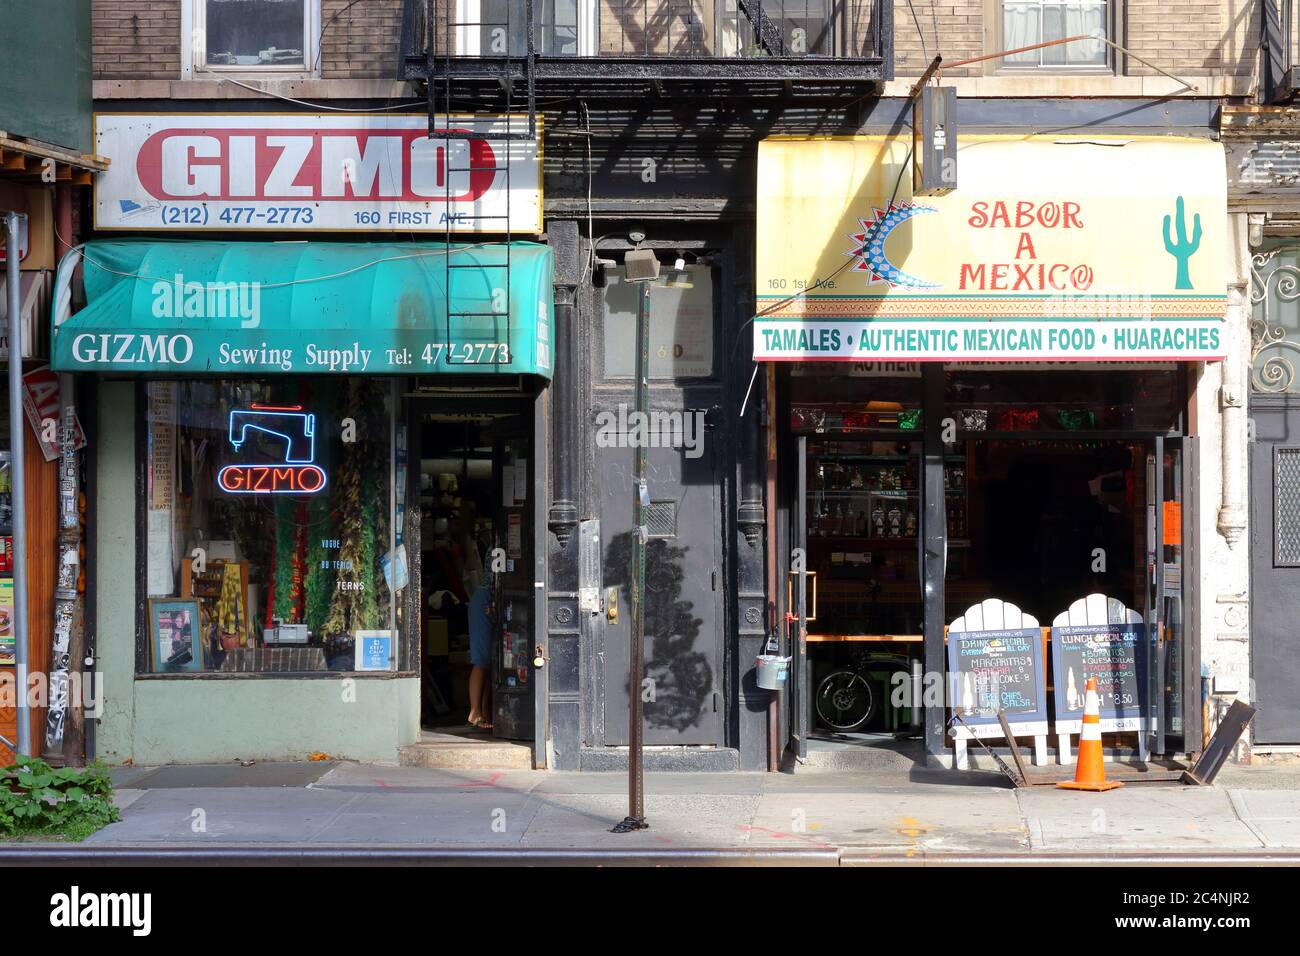 Gizmo, Sabor A Mexico, 160 First Ave, New York, NYC, foto de un suministro de costura, y una tacqueria en el barrio East Village de Manhattan. Foto de stock